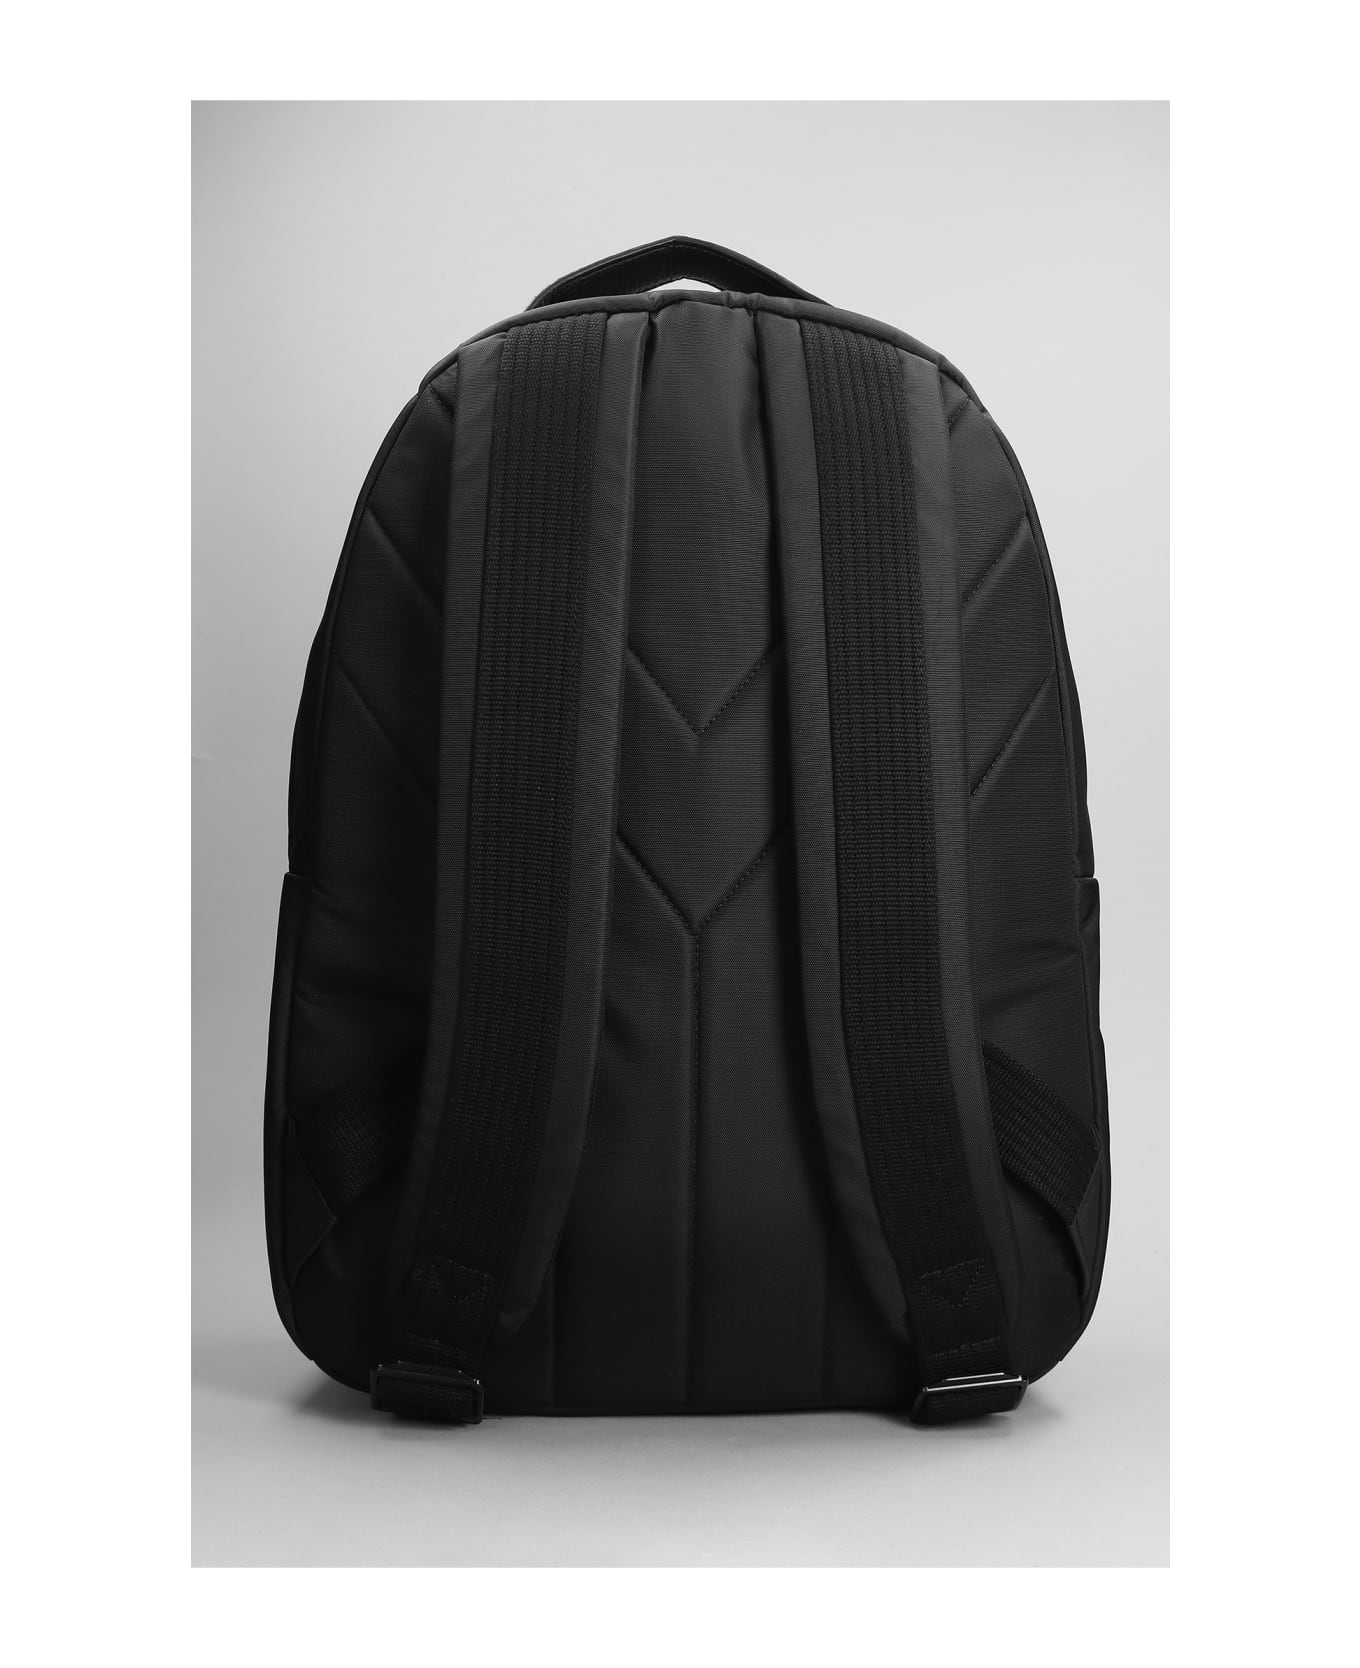 Y-3 Lux Backpack Backpack - Black バックパック